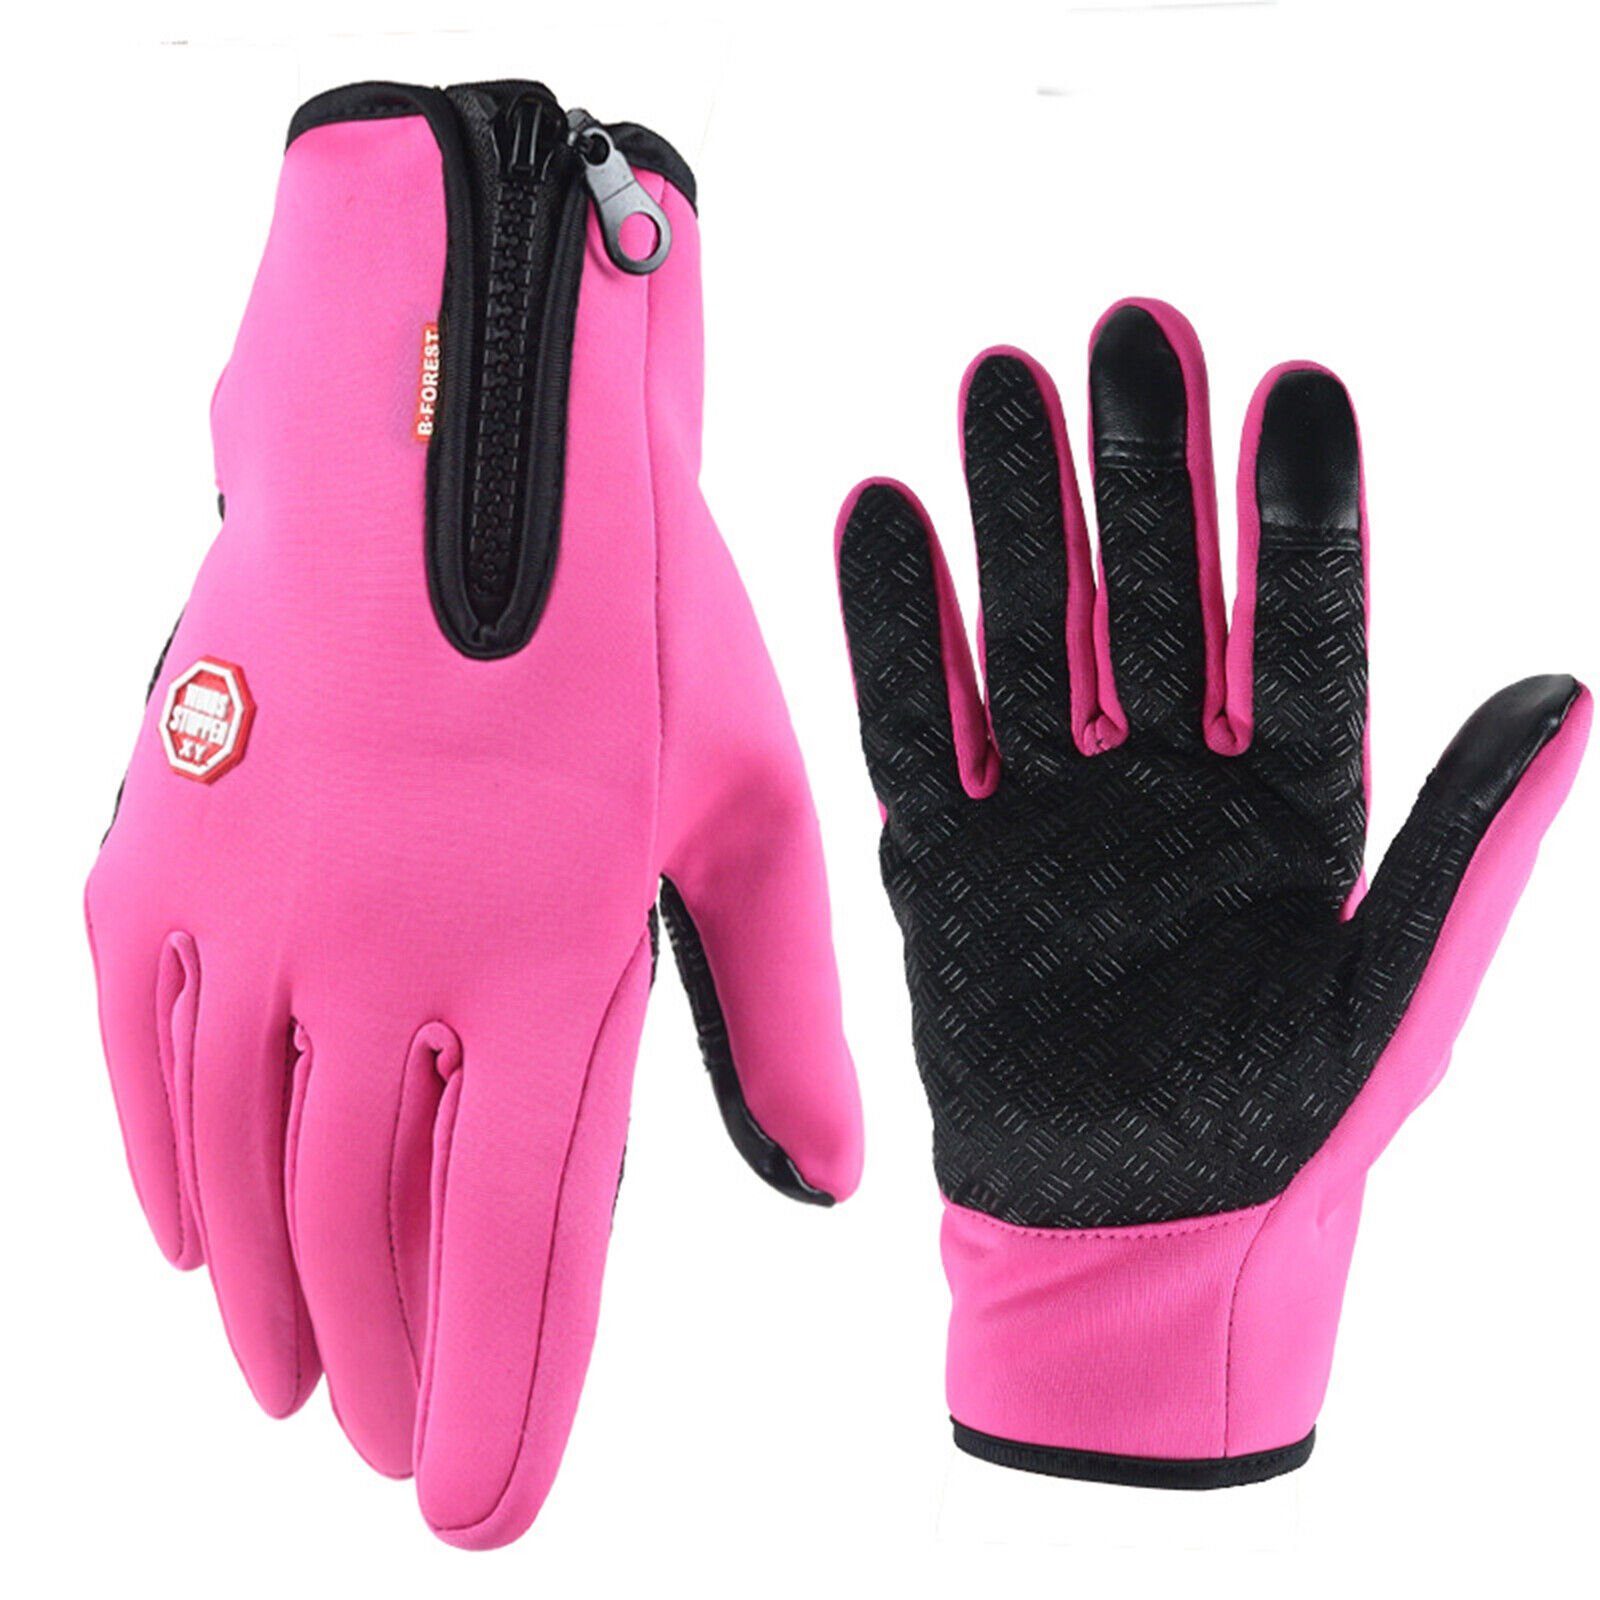 Alster Herz Fahrradhandschuhe Fahrrad atmungsaktiv sportlichem ganzjährig, Pink Touchscreen, Handschuhe leicht bequem, in A0001 Design